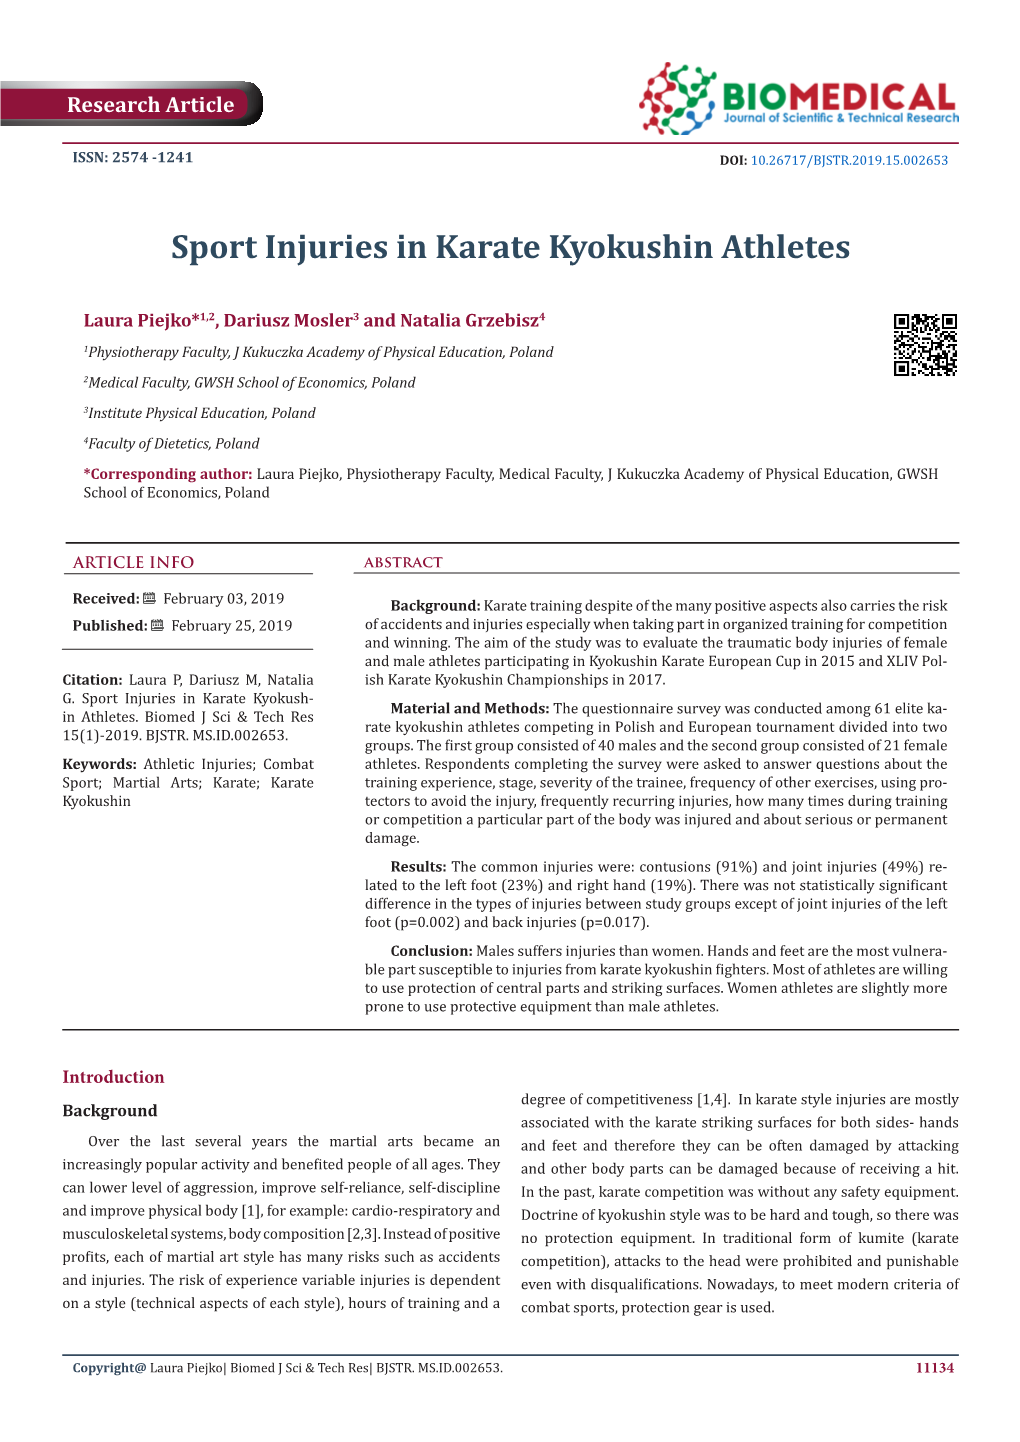 Sport Injuries in Karate Kyokushin Athletes